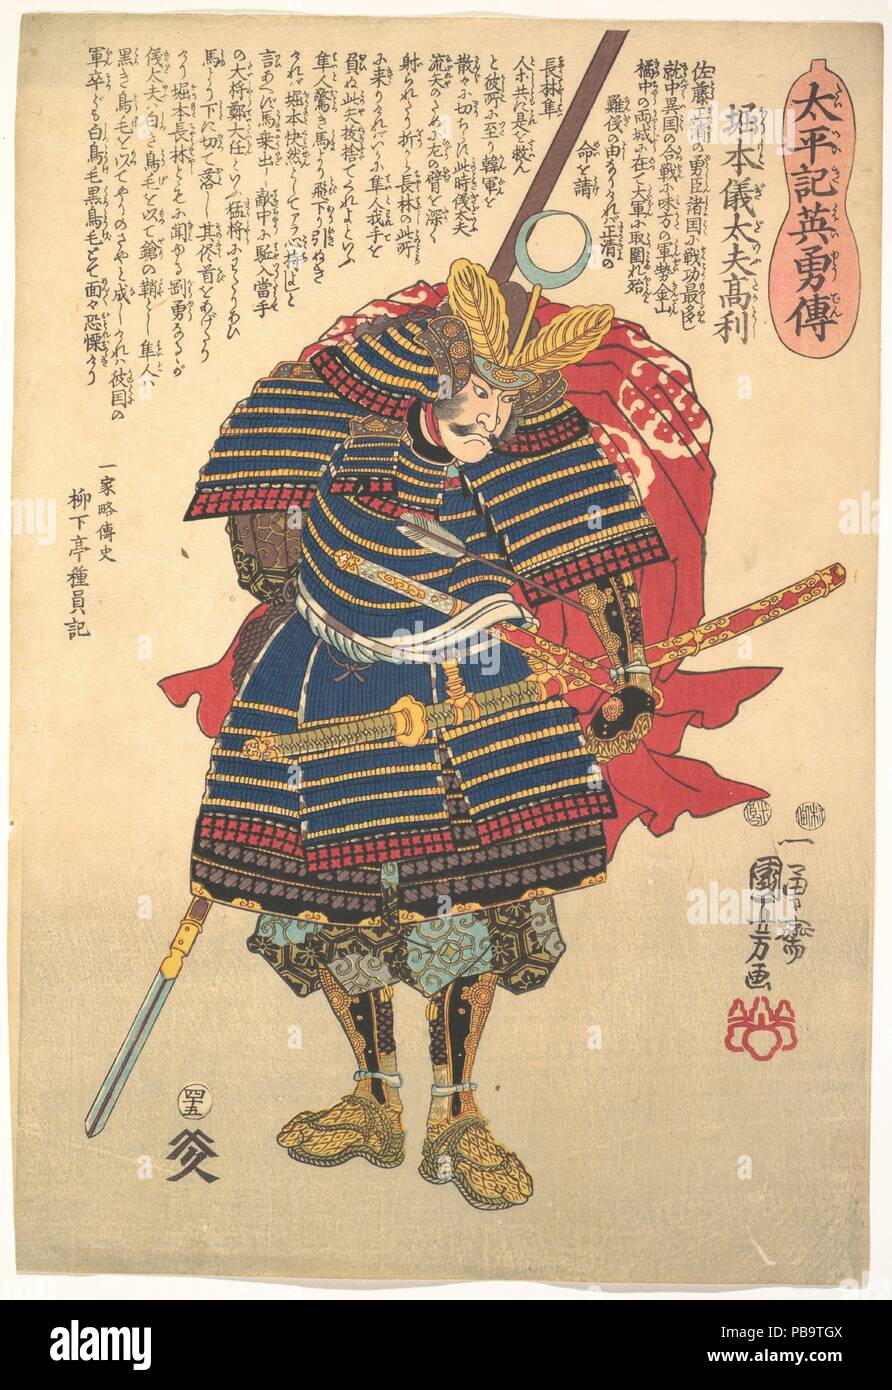 Gidayu Horimoto Takatoshi. Artiste : Utagawa Kuniyoshi (1797-1861), Japonais. Culture : le Japon. Dimensions : Oban tate-e, 14 7/8 x 10 in. (37,8 x 25,4 cm). Date : ca. 1848. Dans cette série, tous les caractères compris dans les guerres civiles du xvie siècle, une ère qui était inconfortablement proche de l'époque Edo shogounat Tokugawa. Ainsi, tous sont déguisés en chiffres dans le Taiheiki (Chronique d'une grande paix), une histoire des guerres de royalistes contre les seigneurs d'Ashikaga au cours du deuxième trimestre de la 14e siècle. Cependant, les noms des héros de la série ont été modifiés, et il Banque D'Images